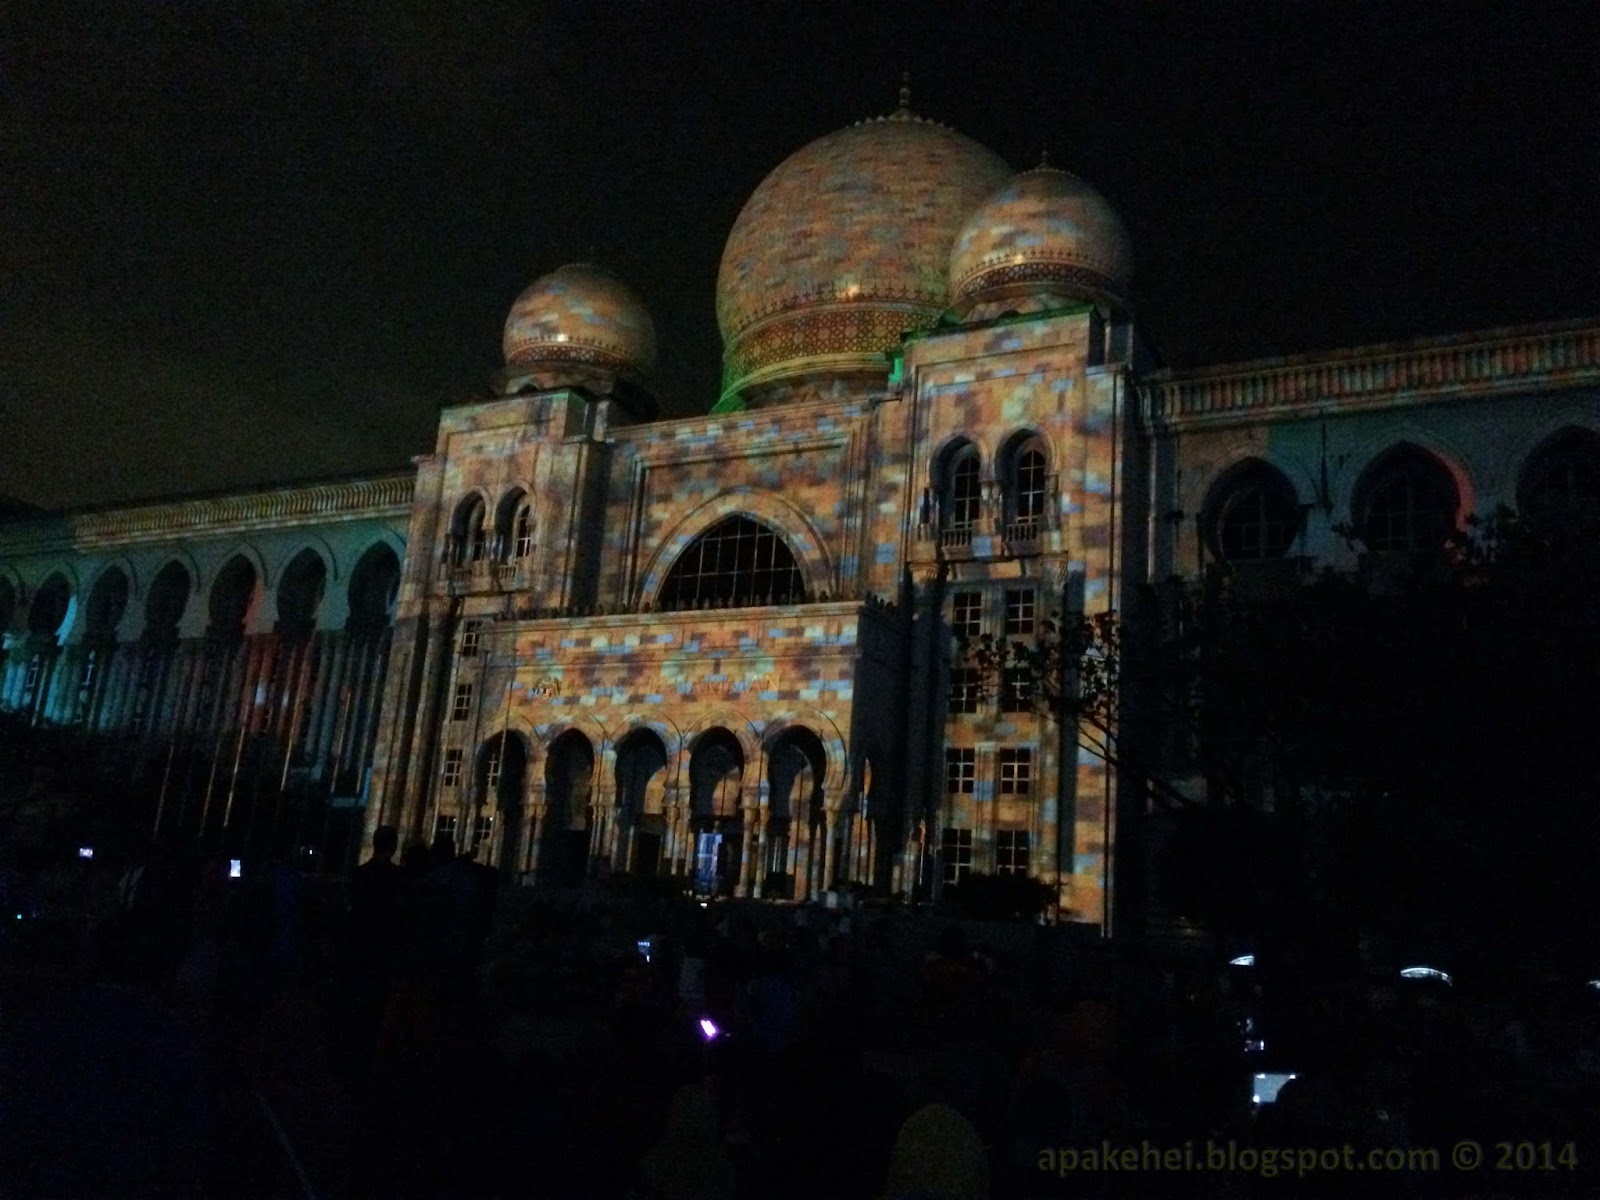 Festival Light and Motion Putrajaya 2014